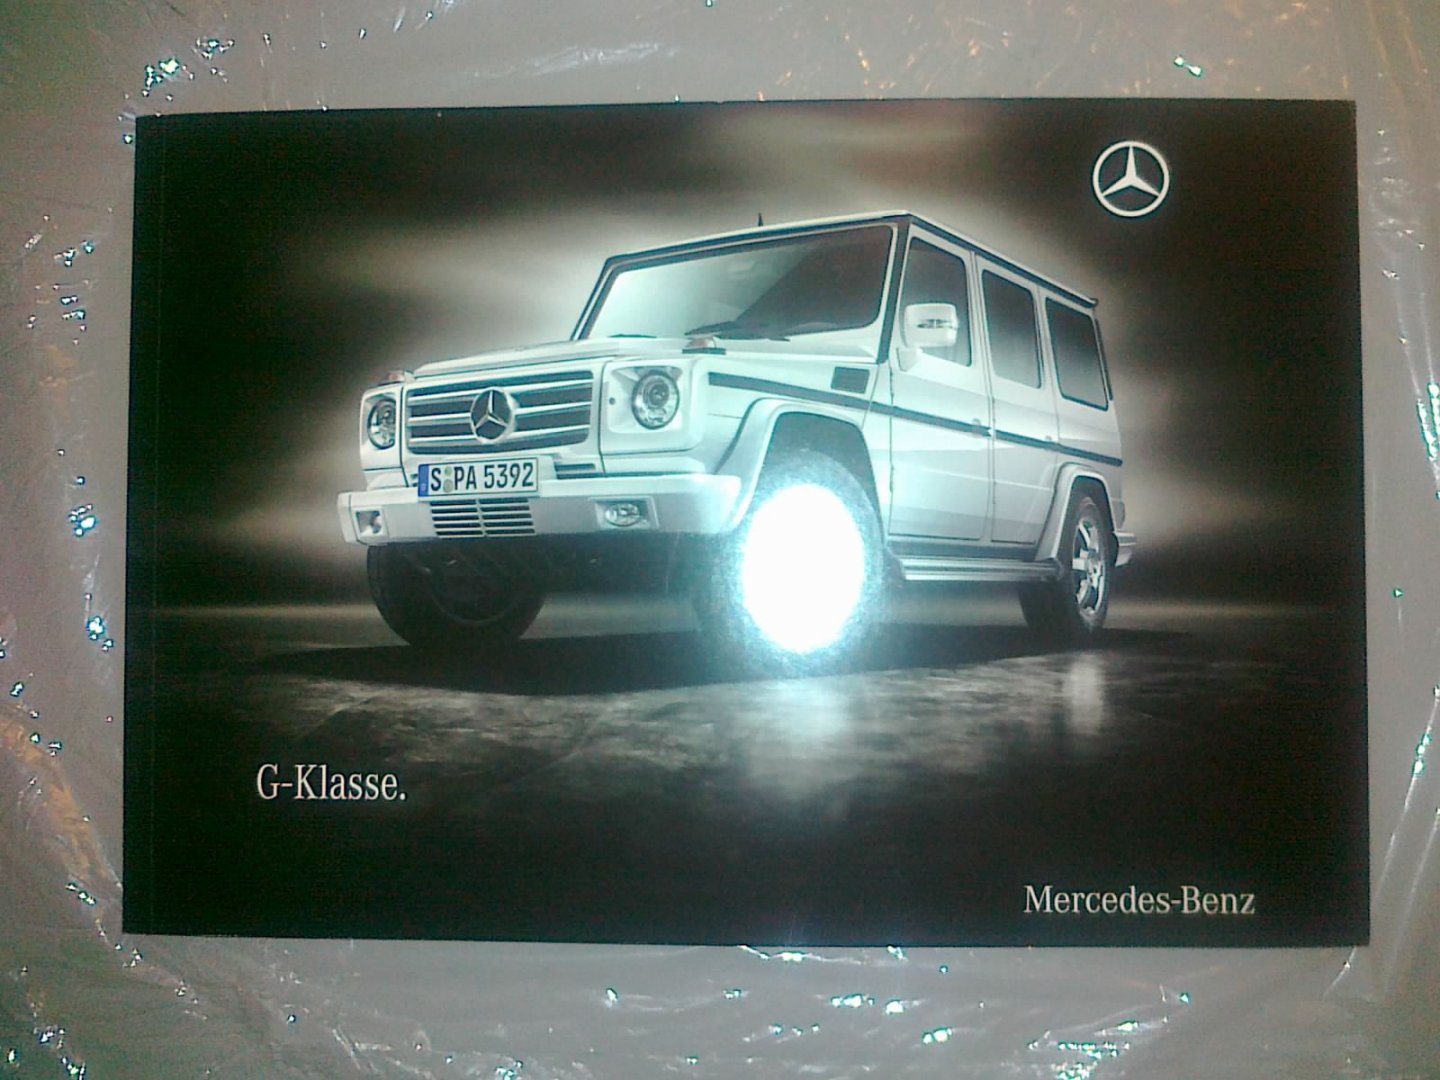 no. - Mercedes G-klasse